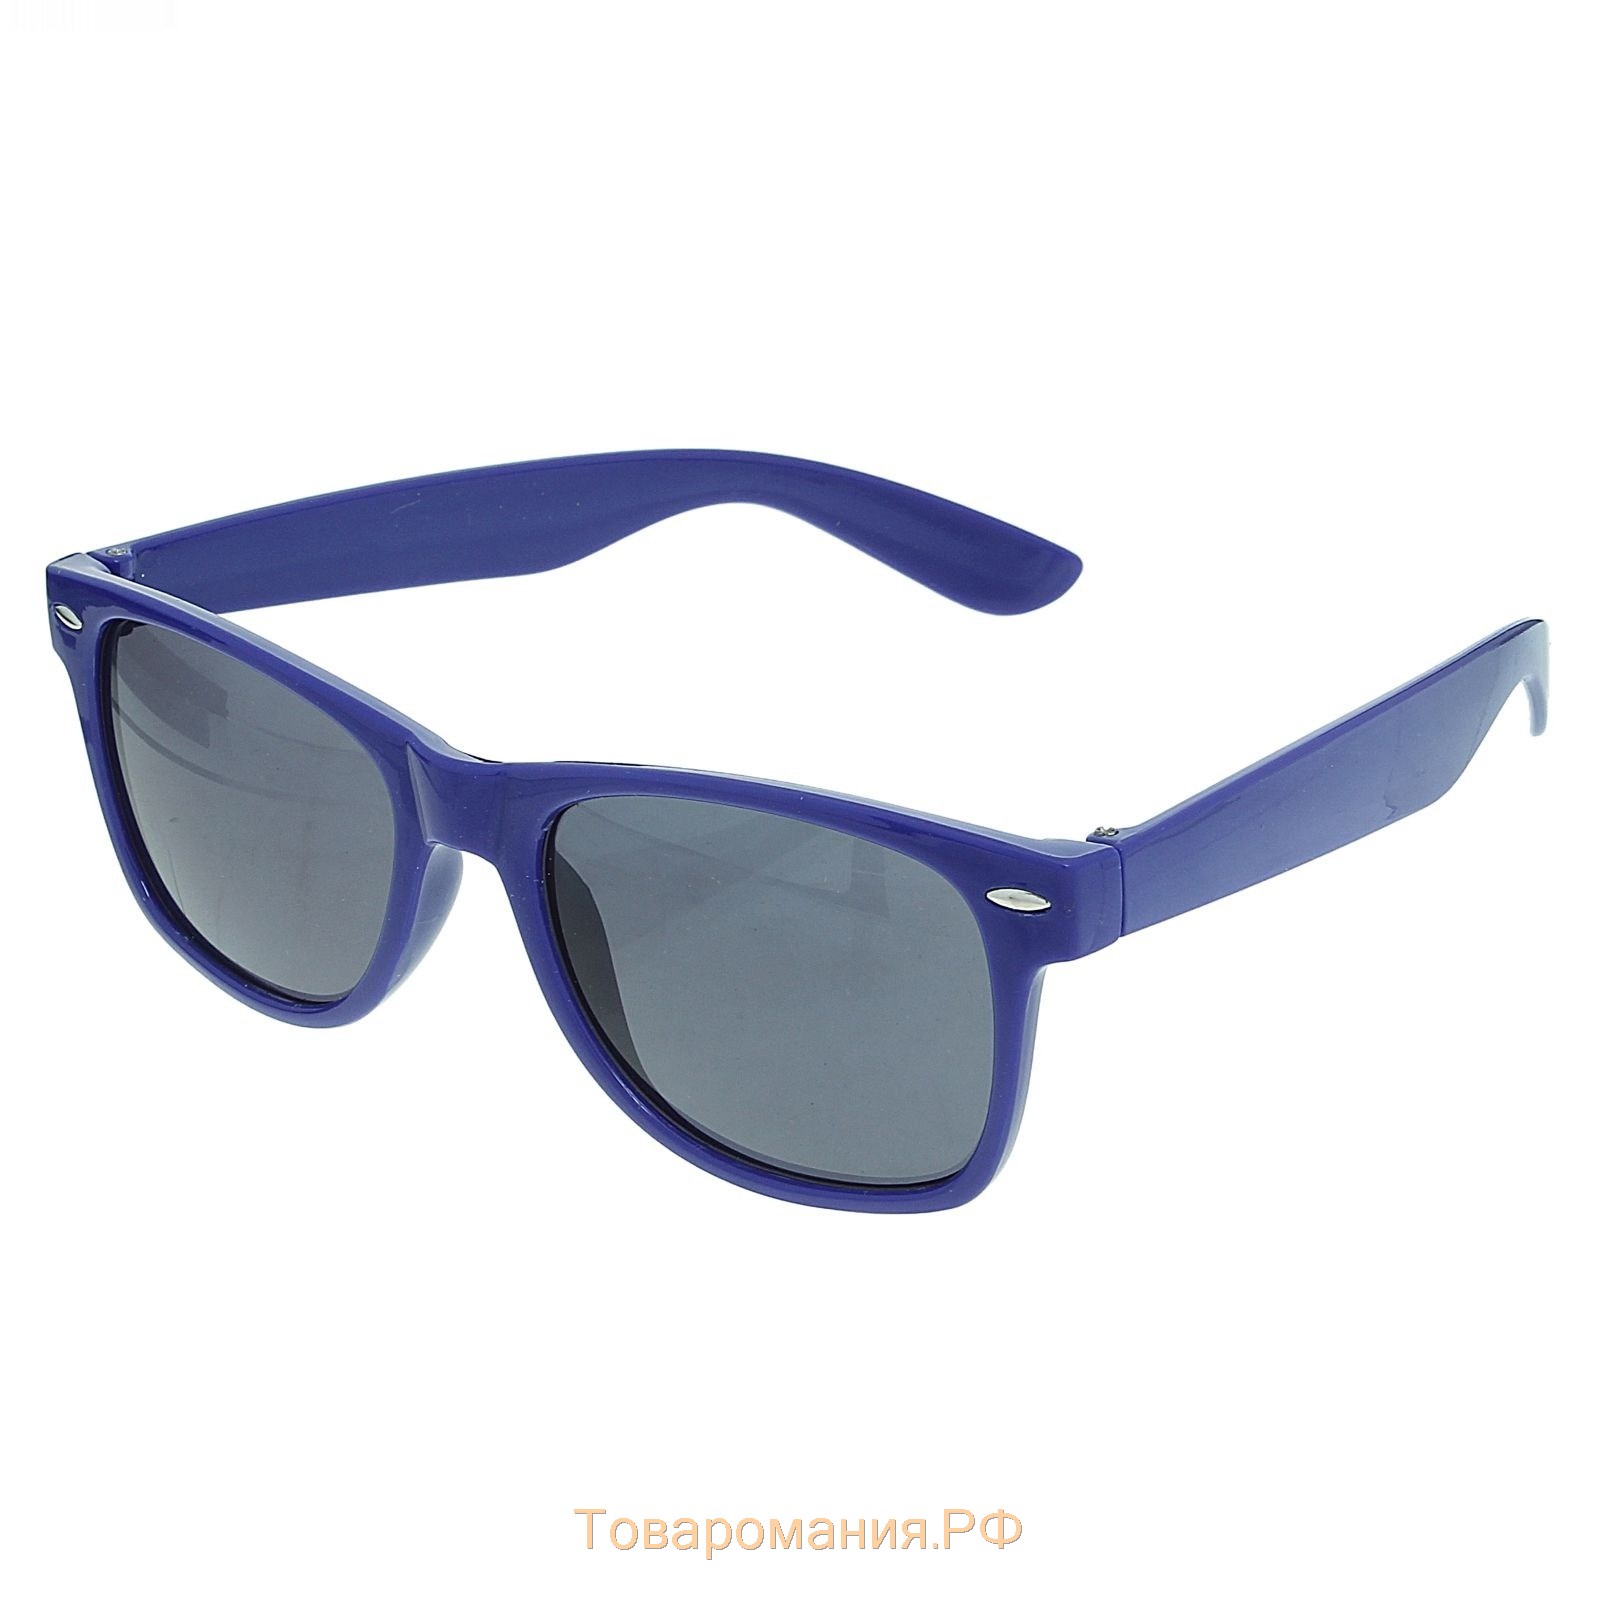 Солнцезащитные очки с самыми темными линзами. Moschino синяя оправа. Ручная тонировка оправ голубого цвета. Купить солнцезащитные очки с синим стеклом. Купить очки липецк